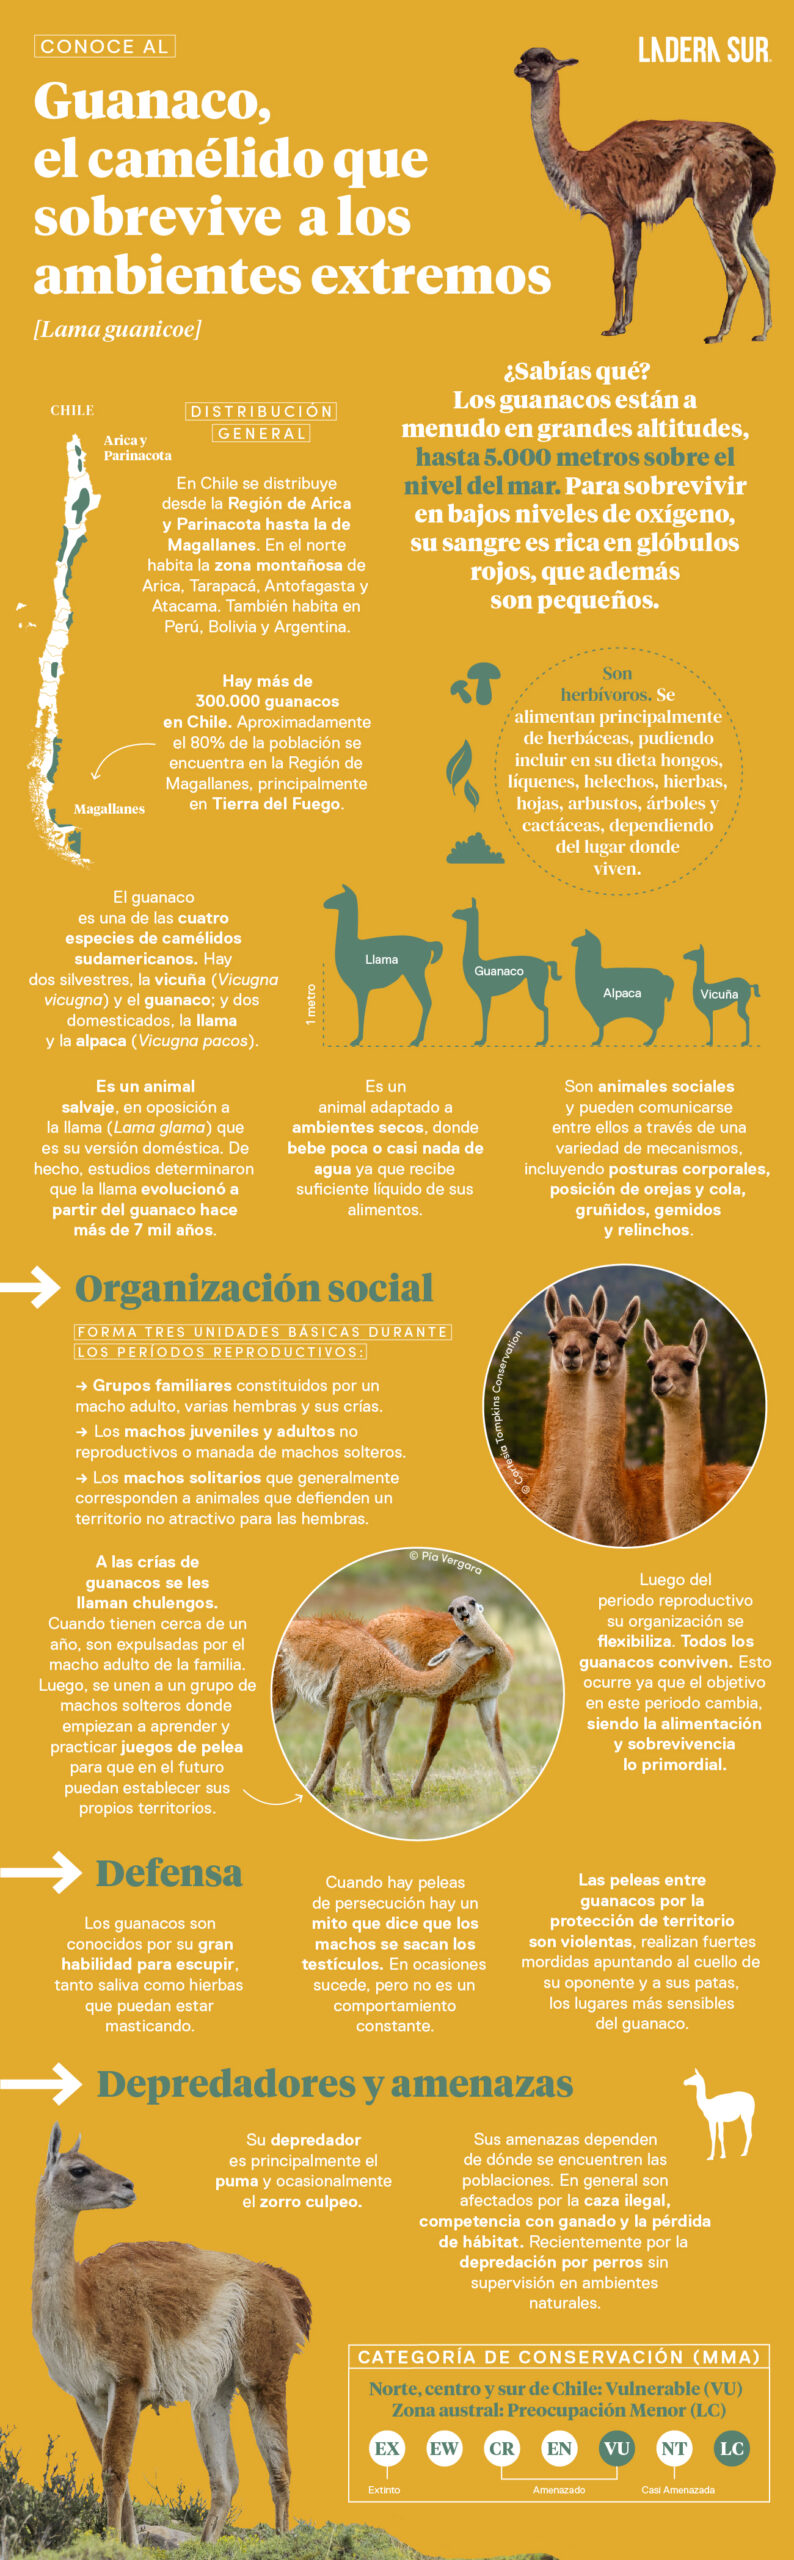 Guanaco, el camélido que sobrevive a los ambientes extremos